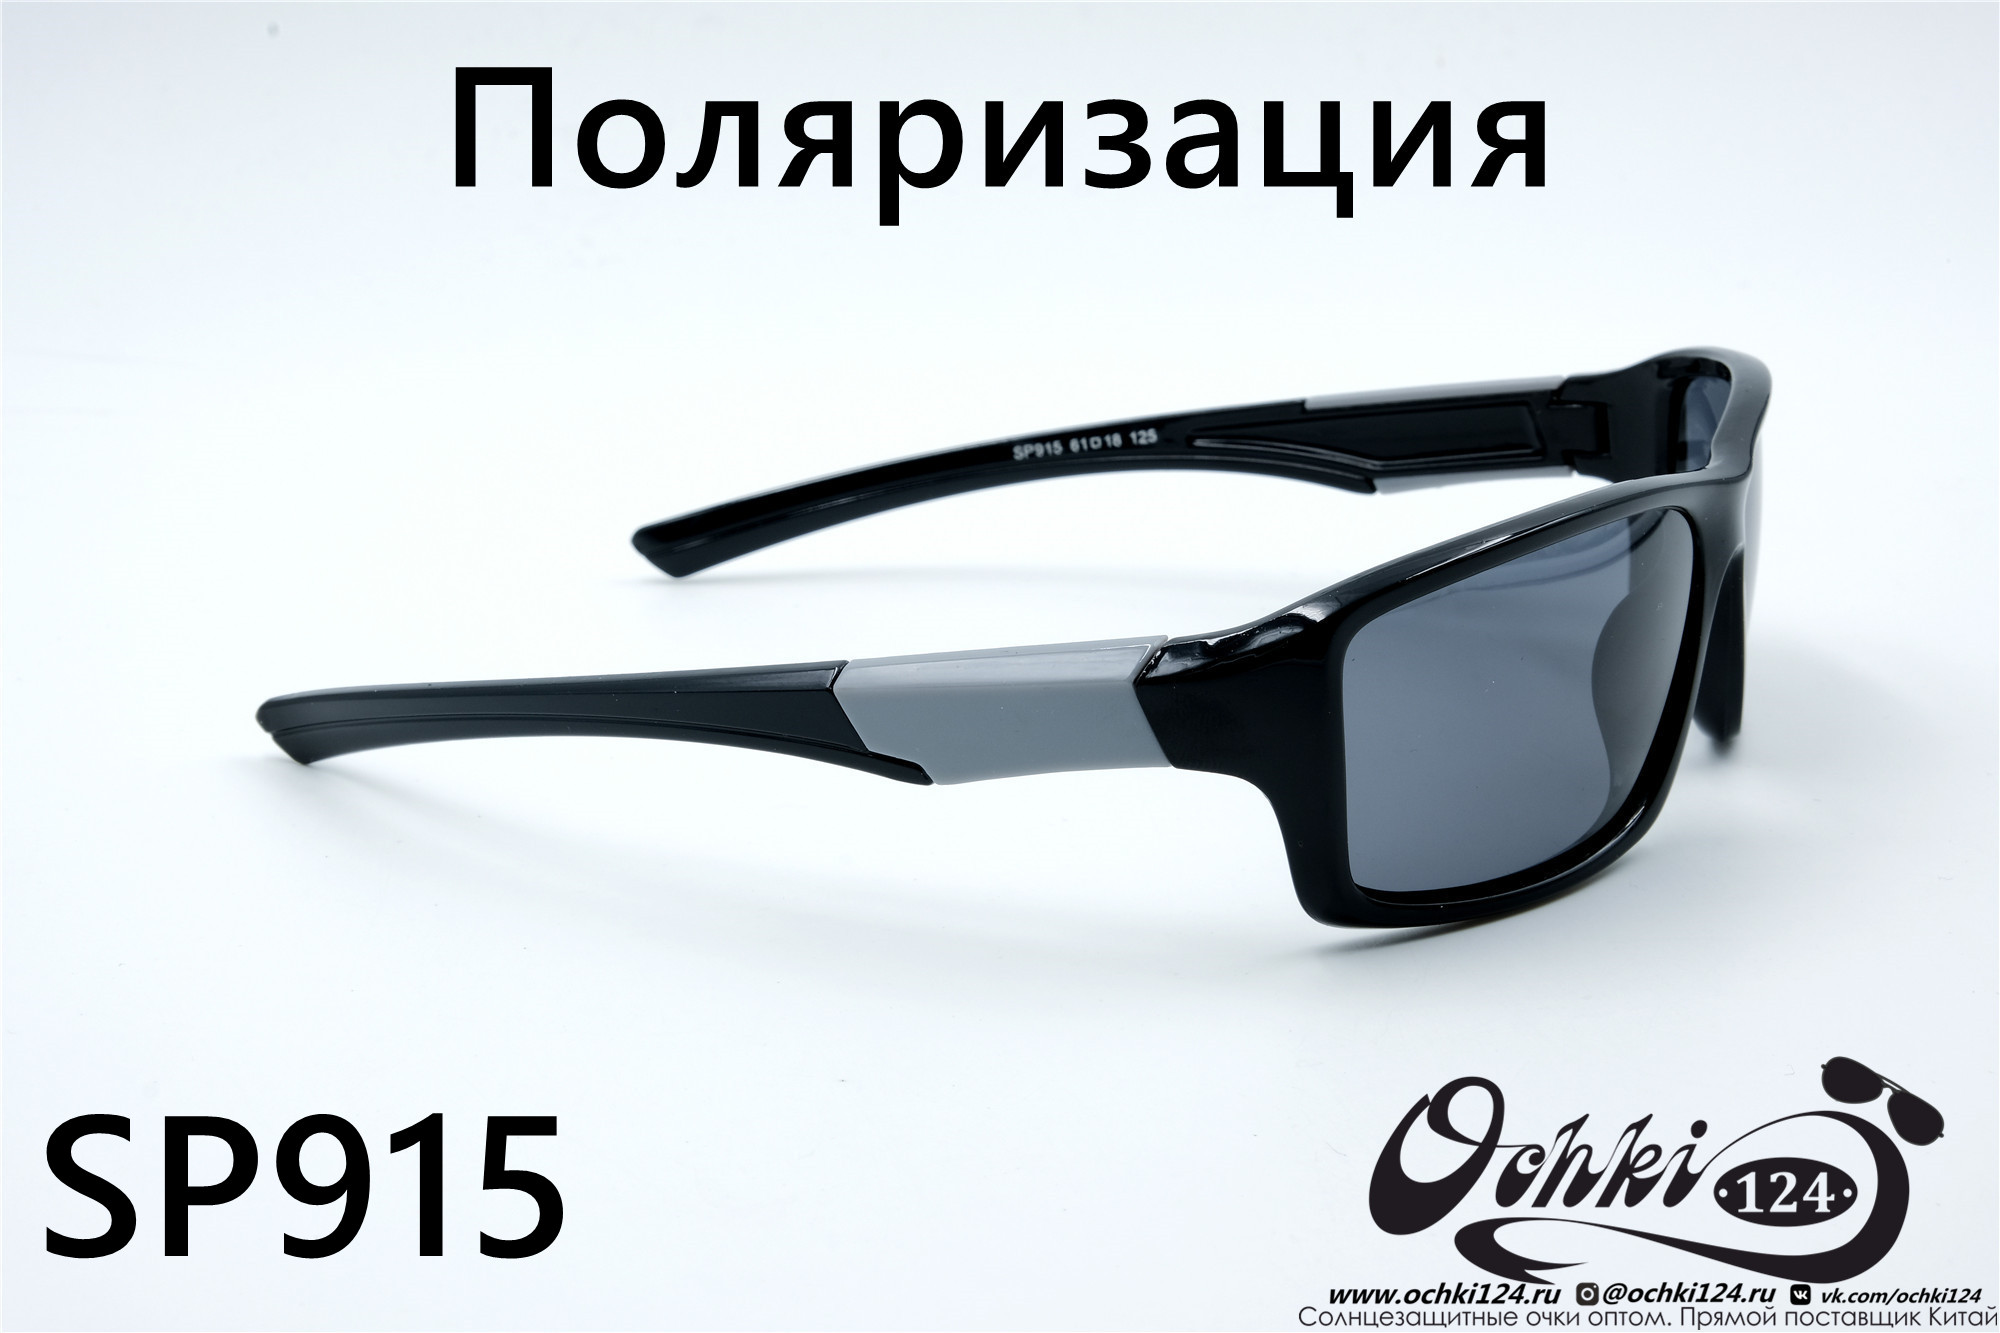  Солнцезащитные очки картинка 2022 Мужские Поляризованные Спорт Materice SP915-5 